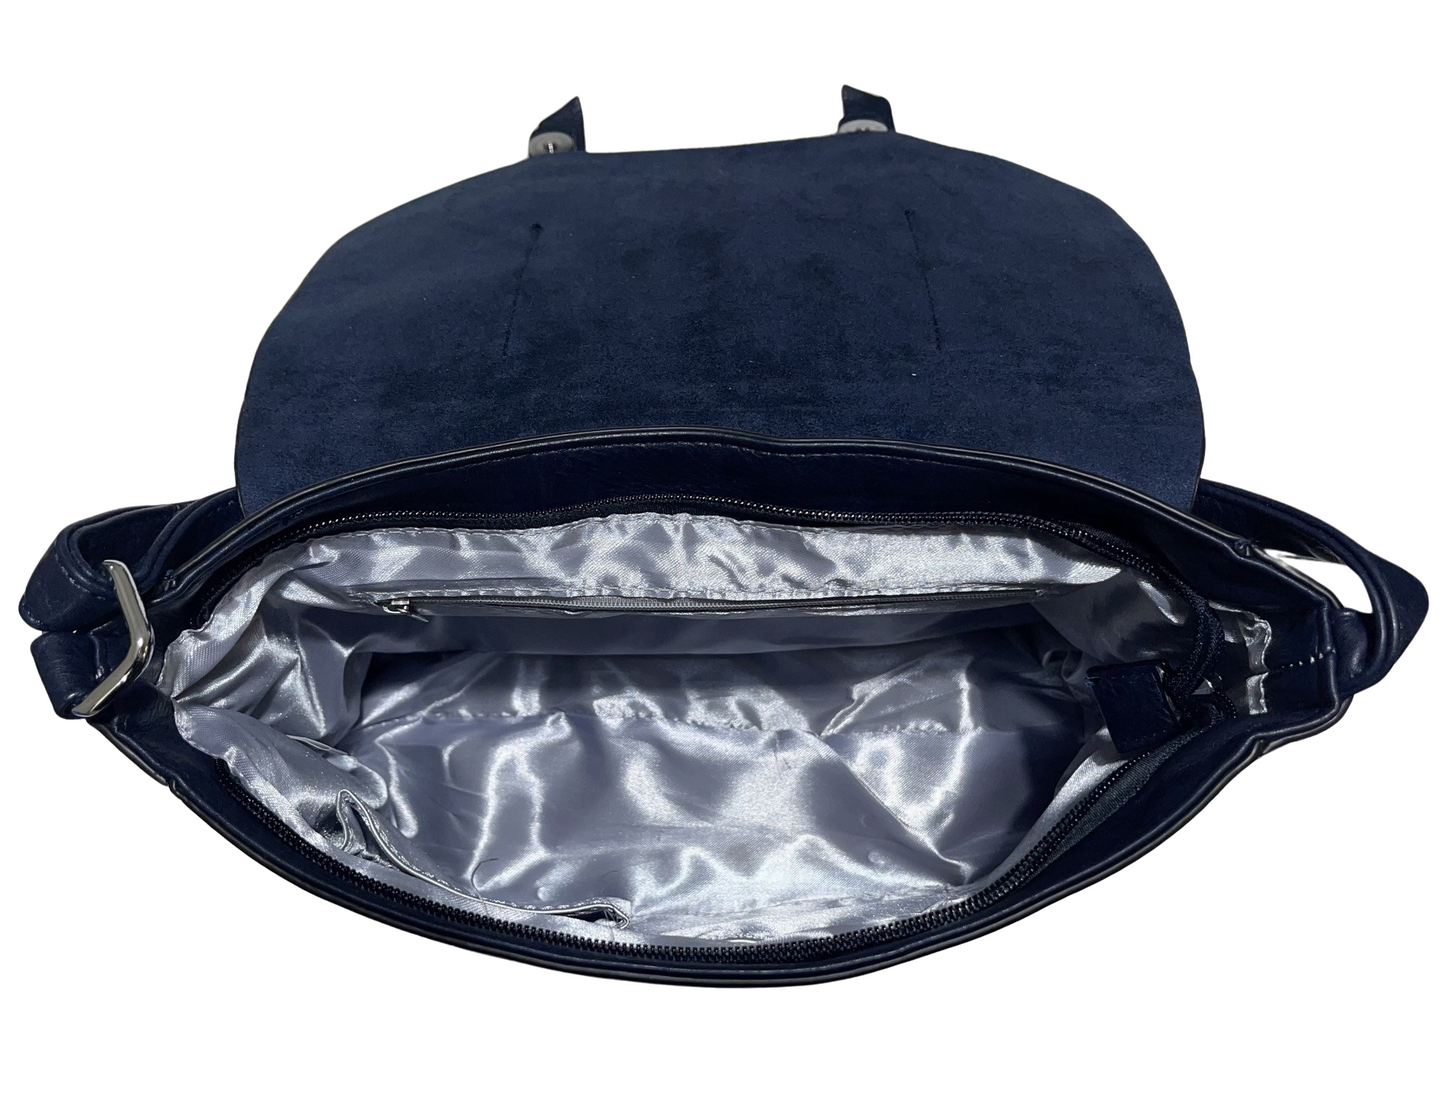 Blau-schwarze Kunstledertasche mit doppeltem Druckknopf und langem Doppelreißverschluss